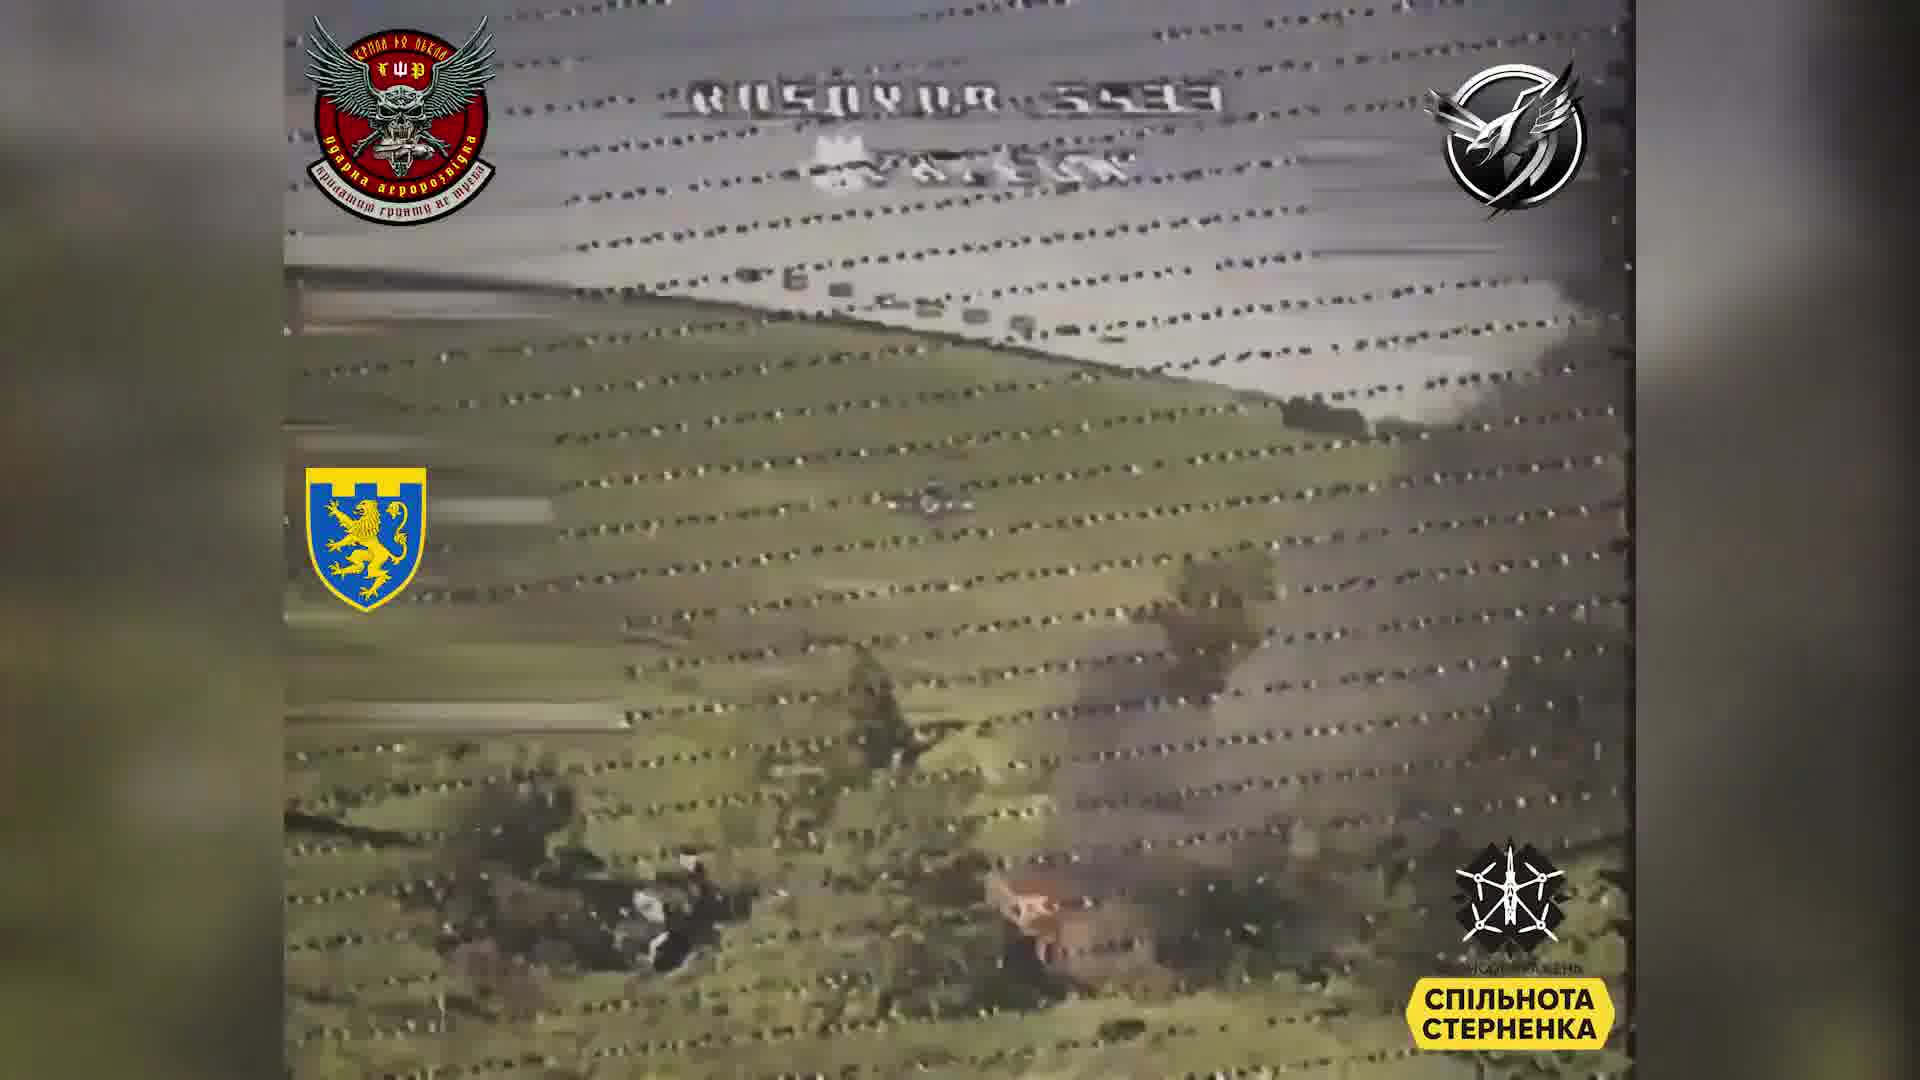 Oekraïense strijdkrachten hebben de Russische militaire colonne in de Koersk-regio van Rusland nabij de grens vernietigd